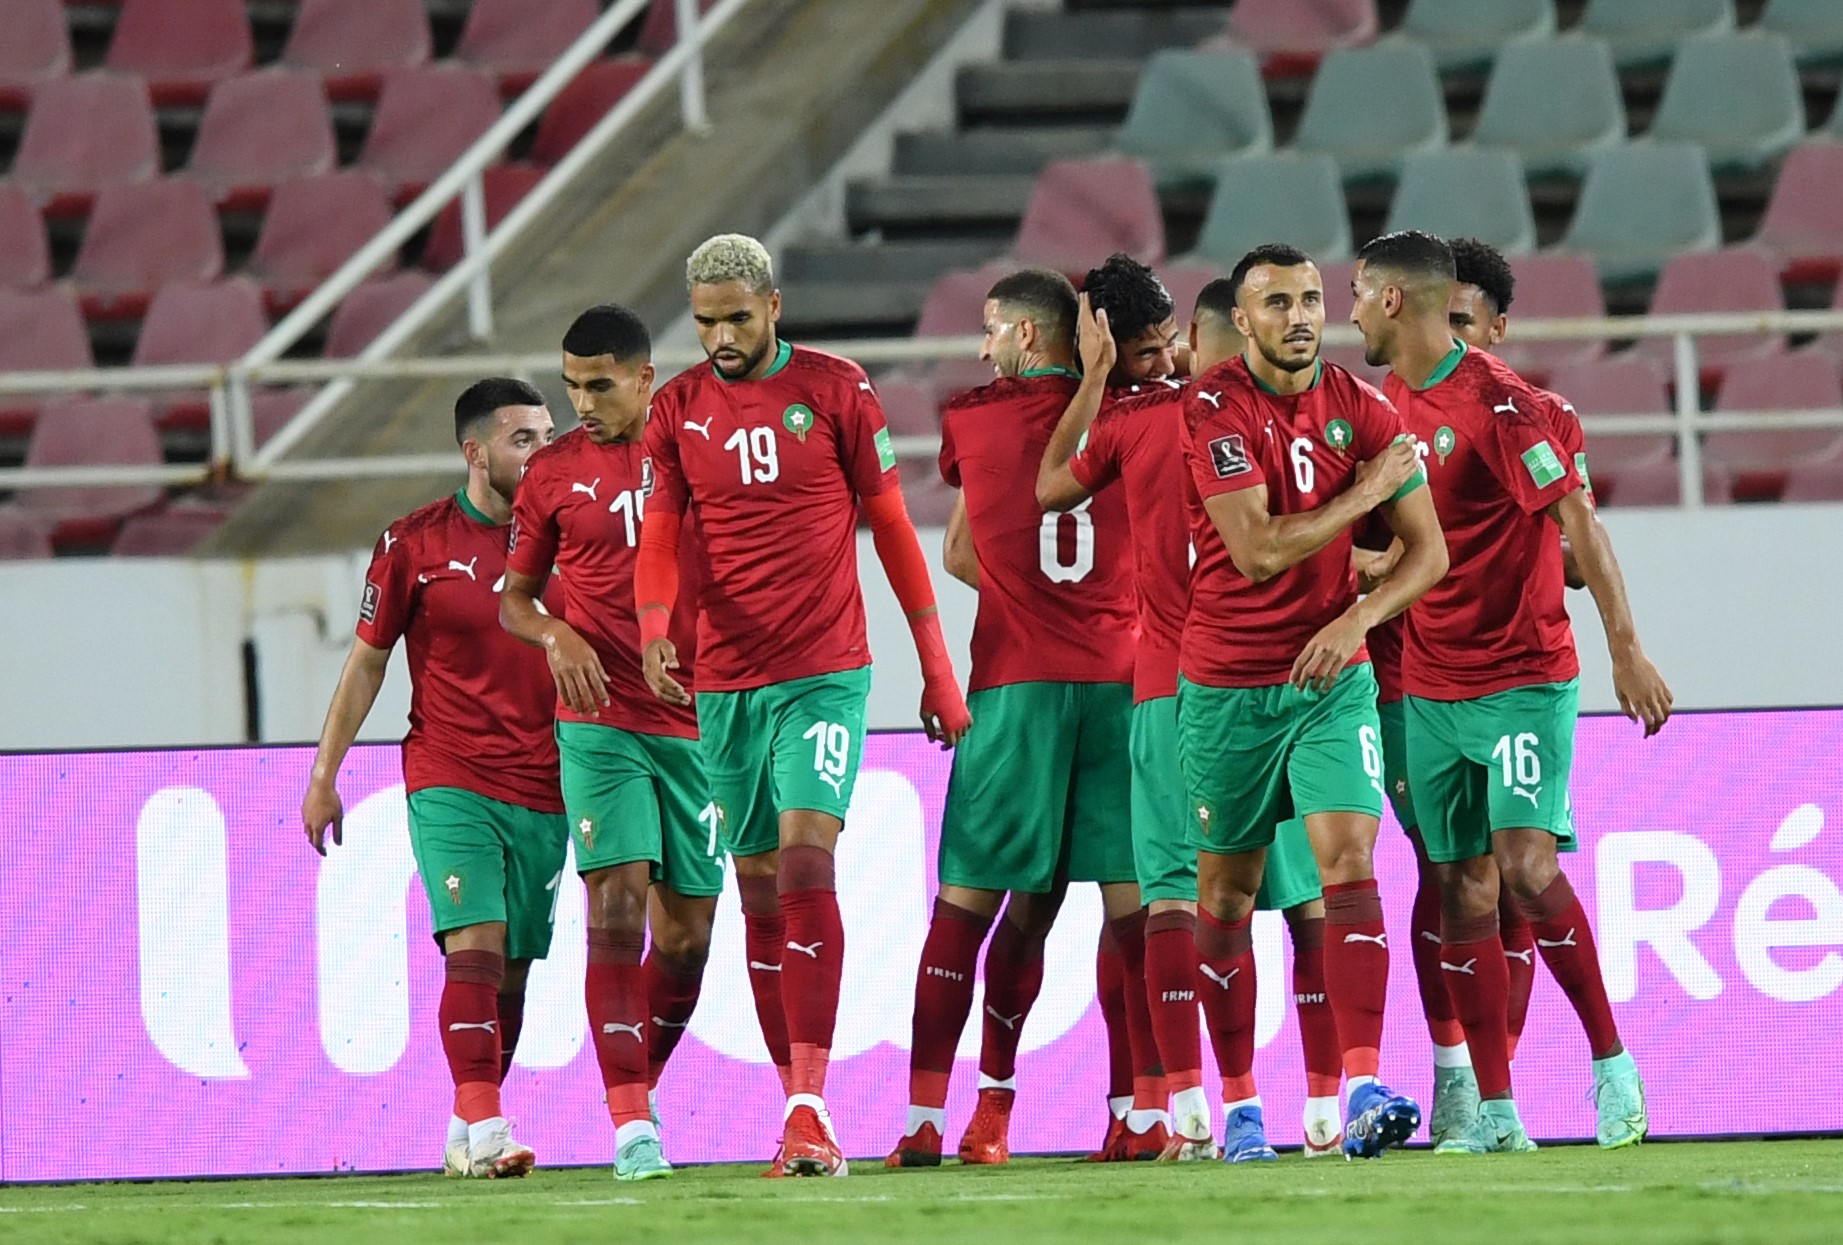 Qualifications africaines au Mondial-2022 : Le Maroc s'impose face au Soudan